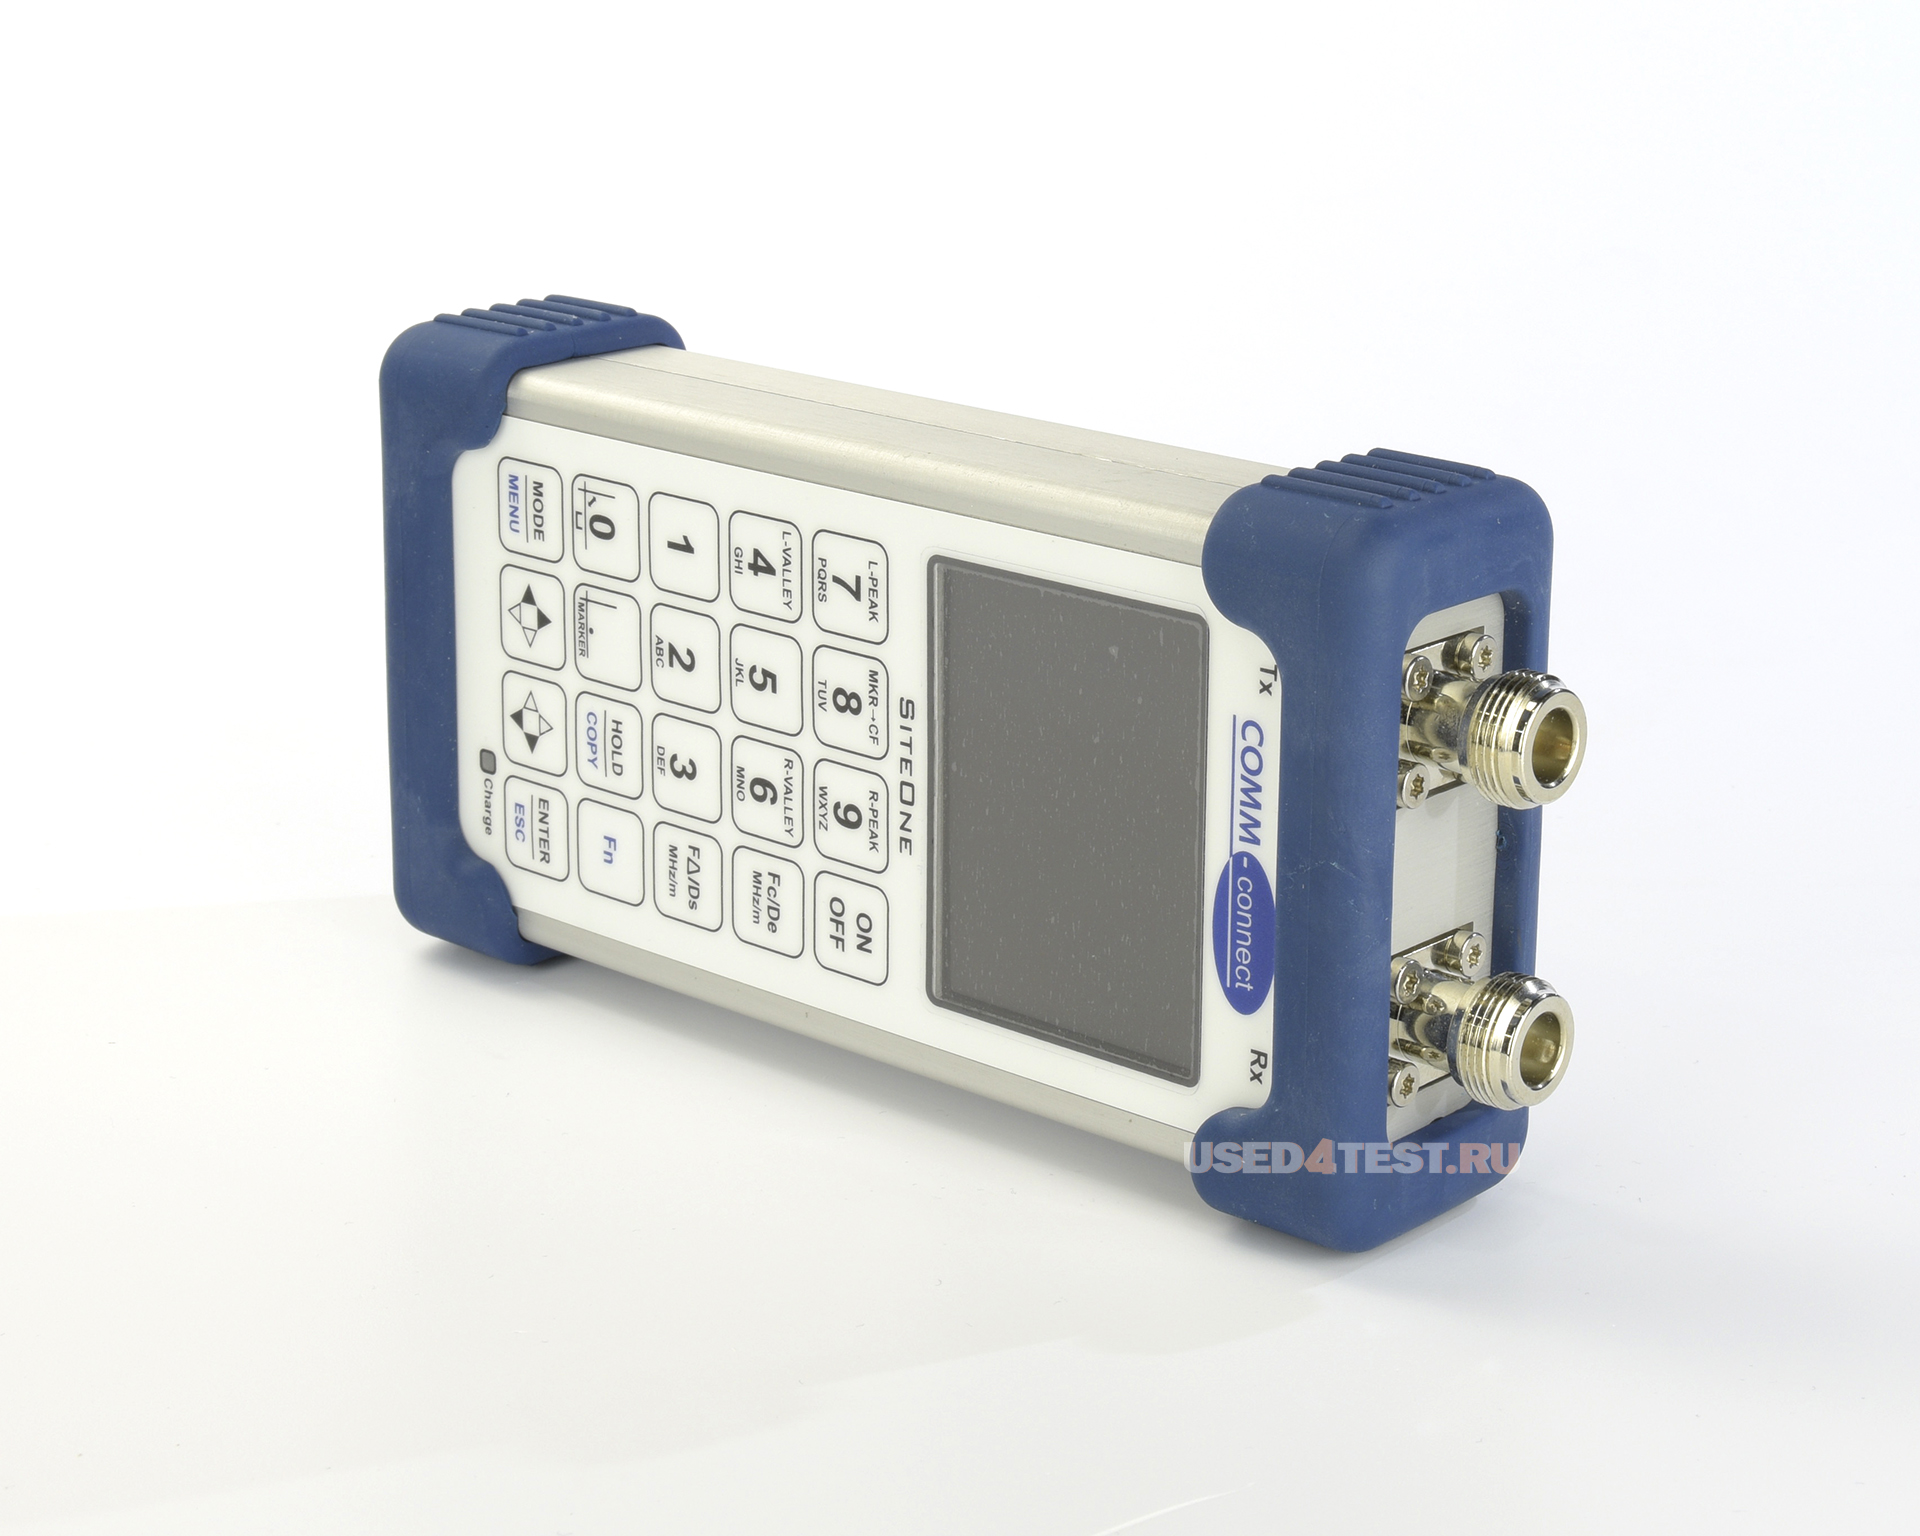 Анализатор AФУ COMM-connect 3028с частотным диапазоном от 50 кГц до 4,4 ГГц
 Стоимость указана в Рублях DDP Москва по безналичному расчету включая НДС 20%
